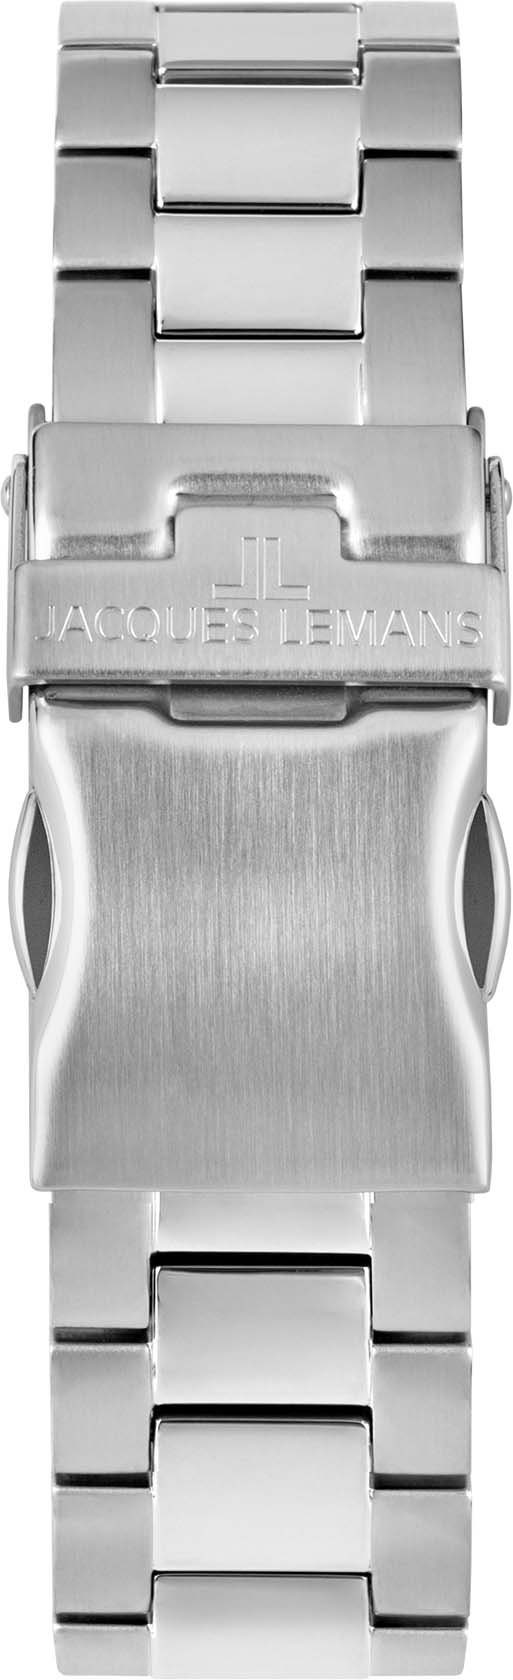 Jacques Lemans Multifunktionsuhr 42-11E schwarz